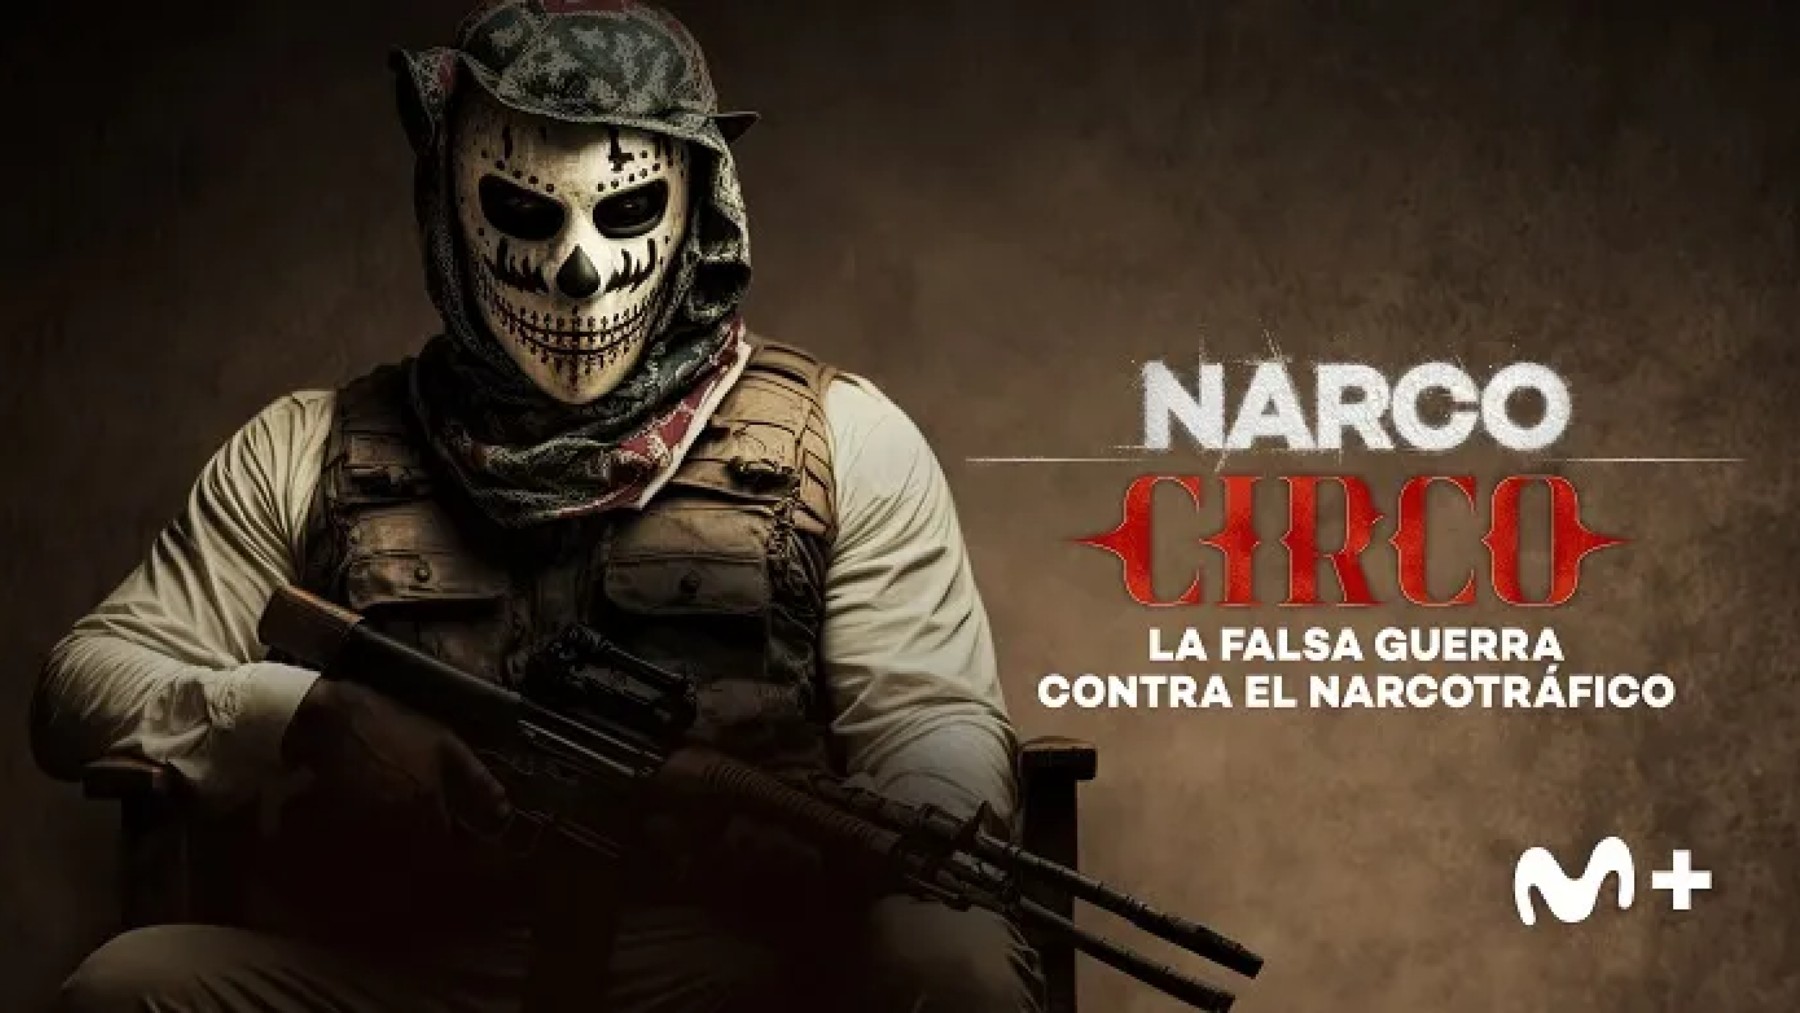 Cartel de ‘Narco Circo’.